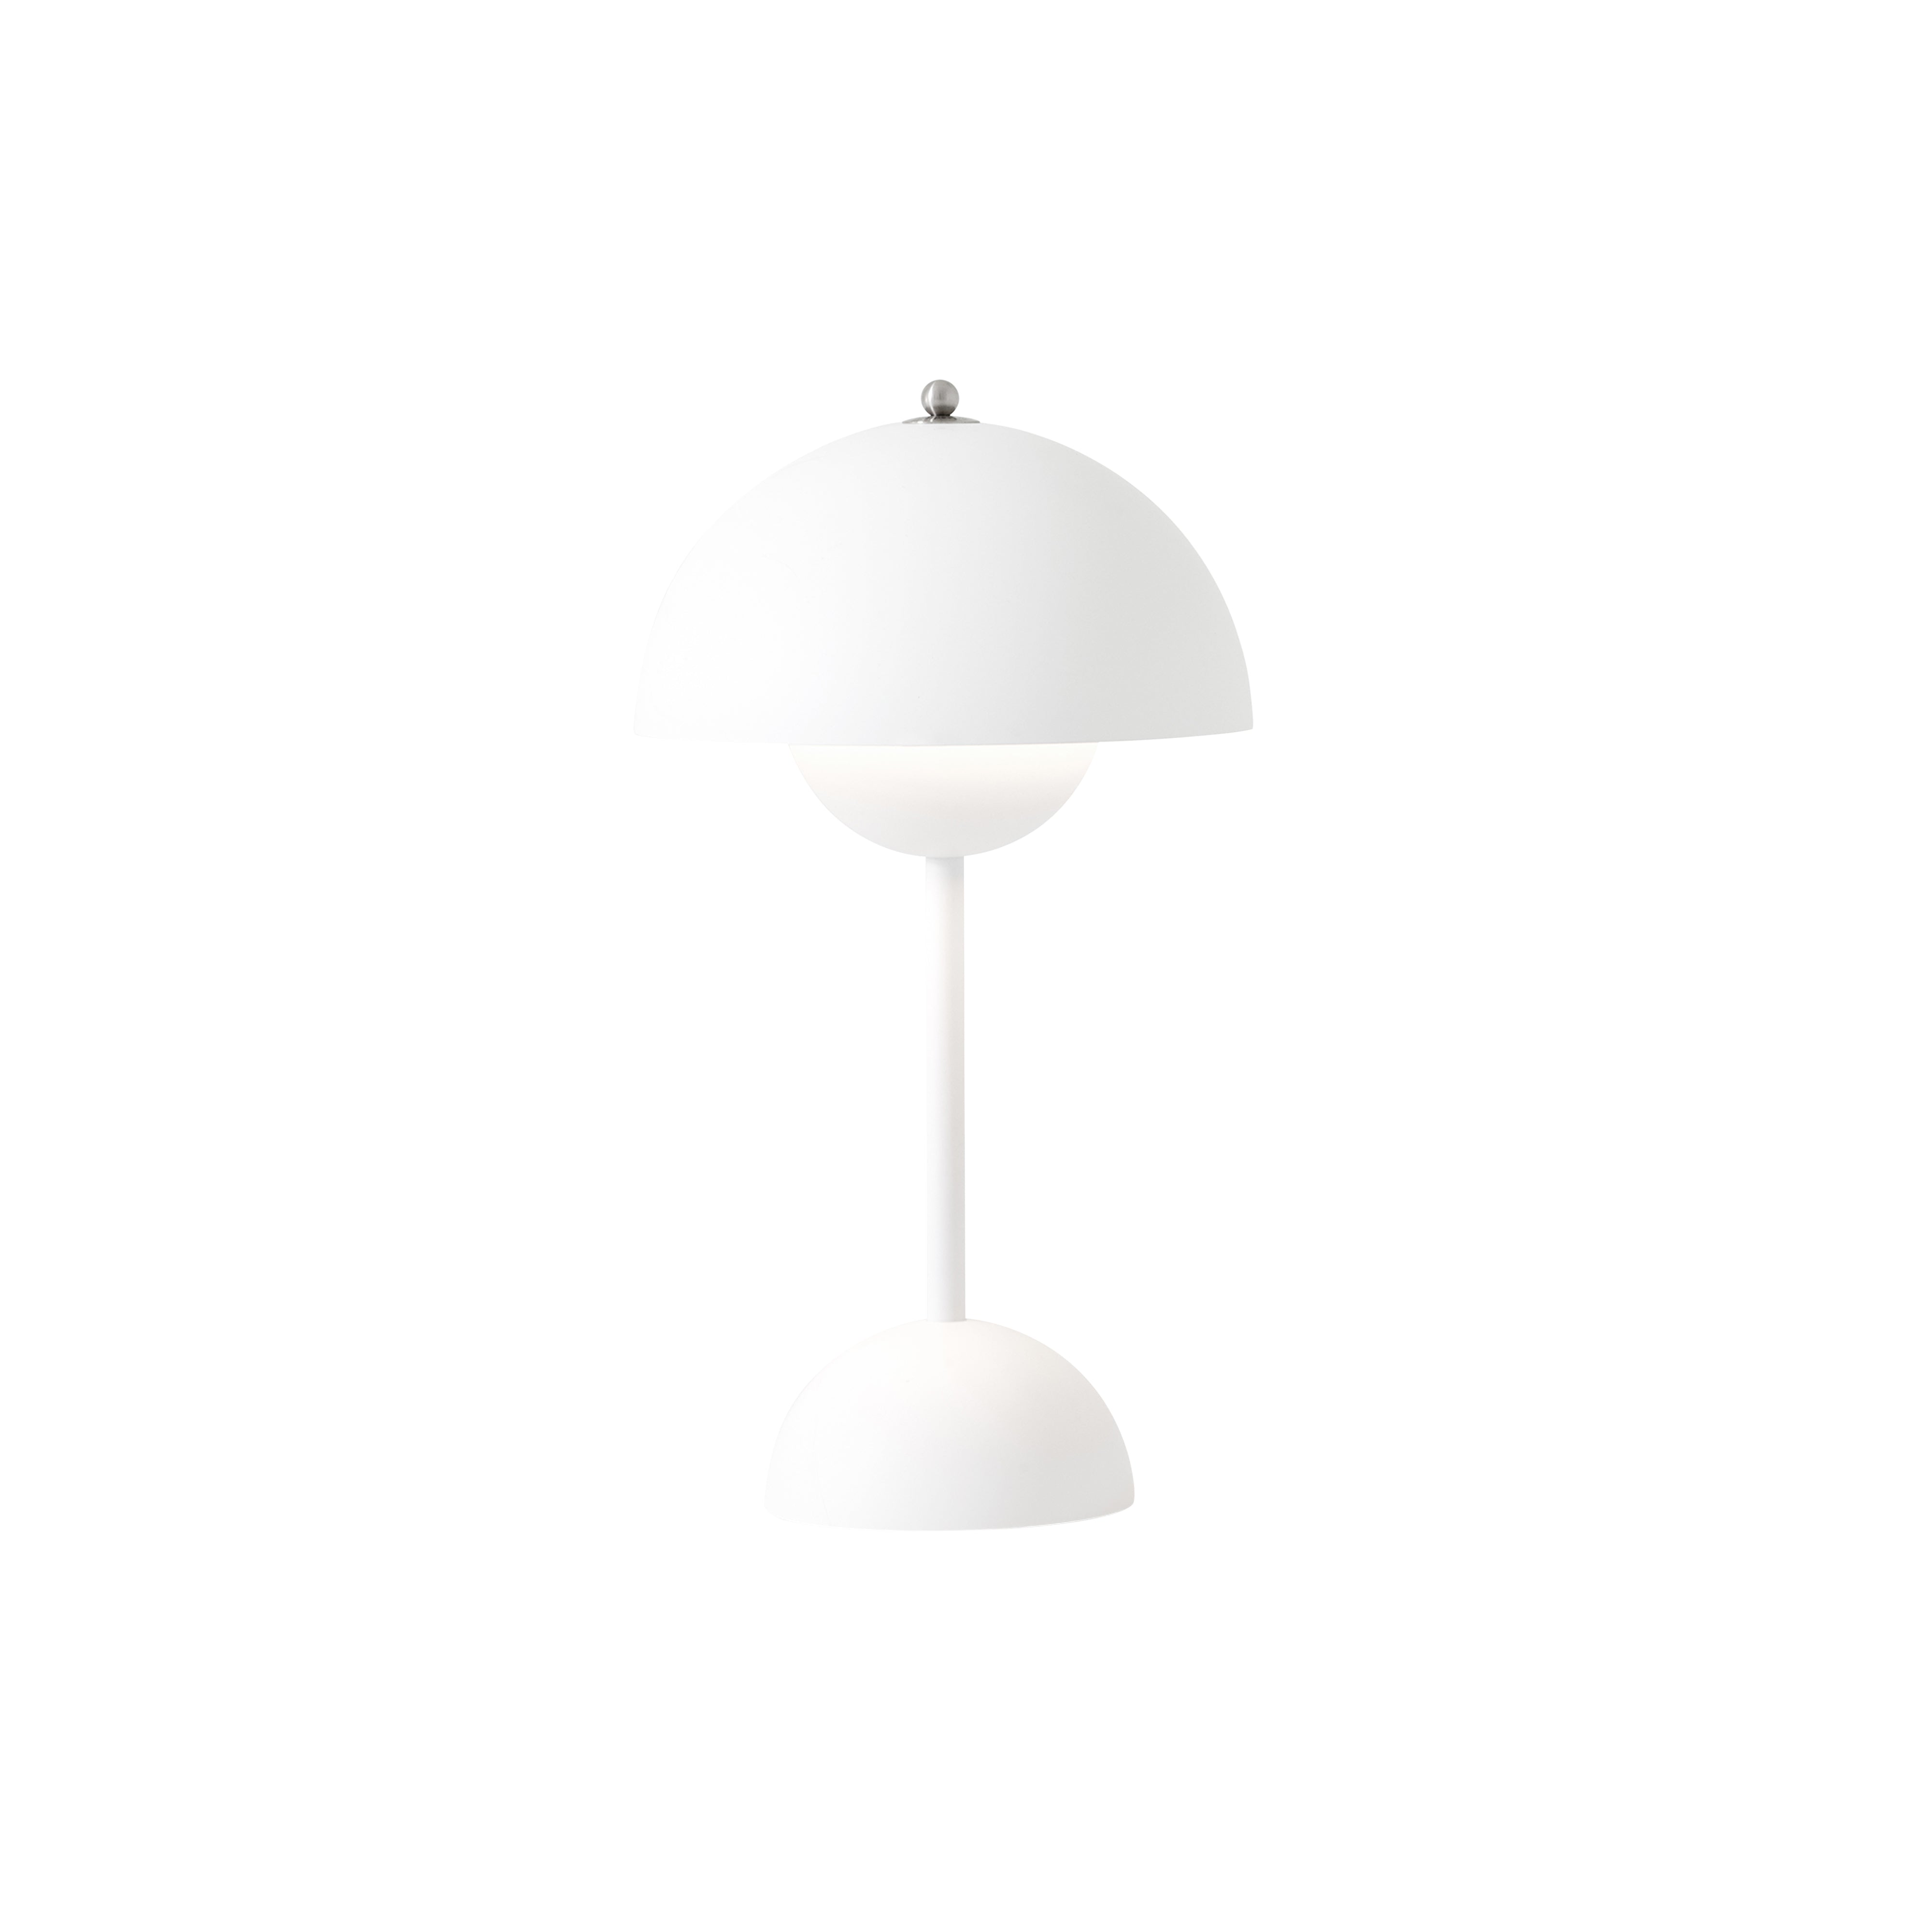 Flowerpot Portable Table Lamp: VP9 + Matt White